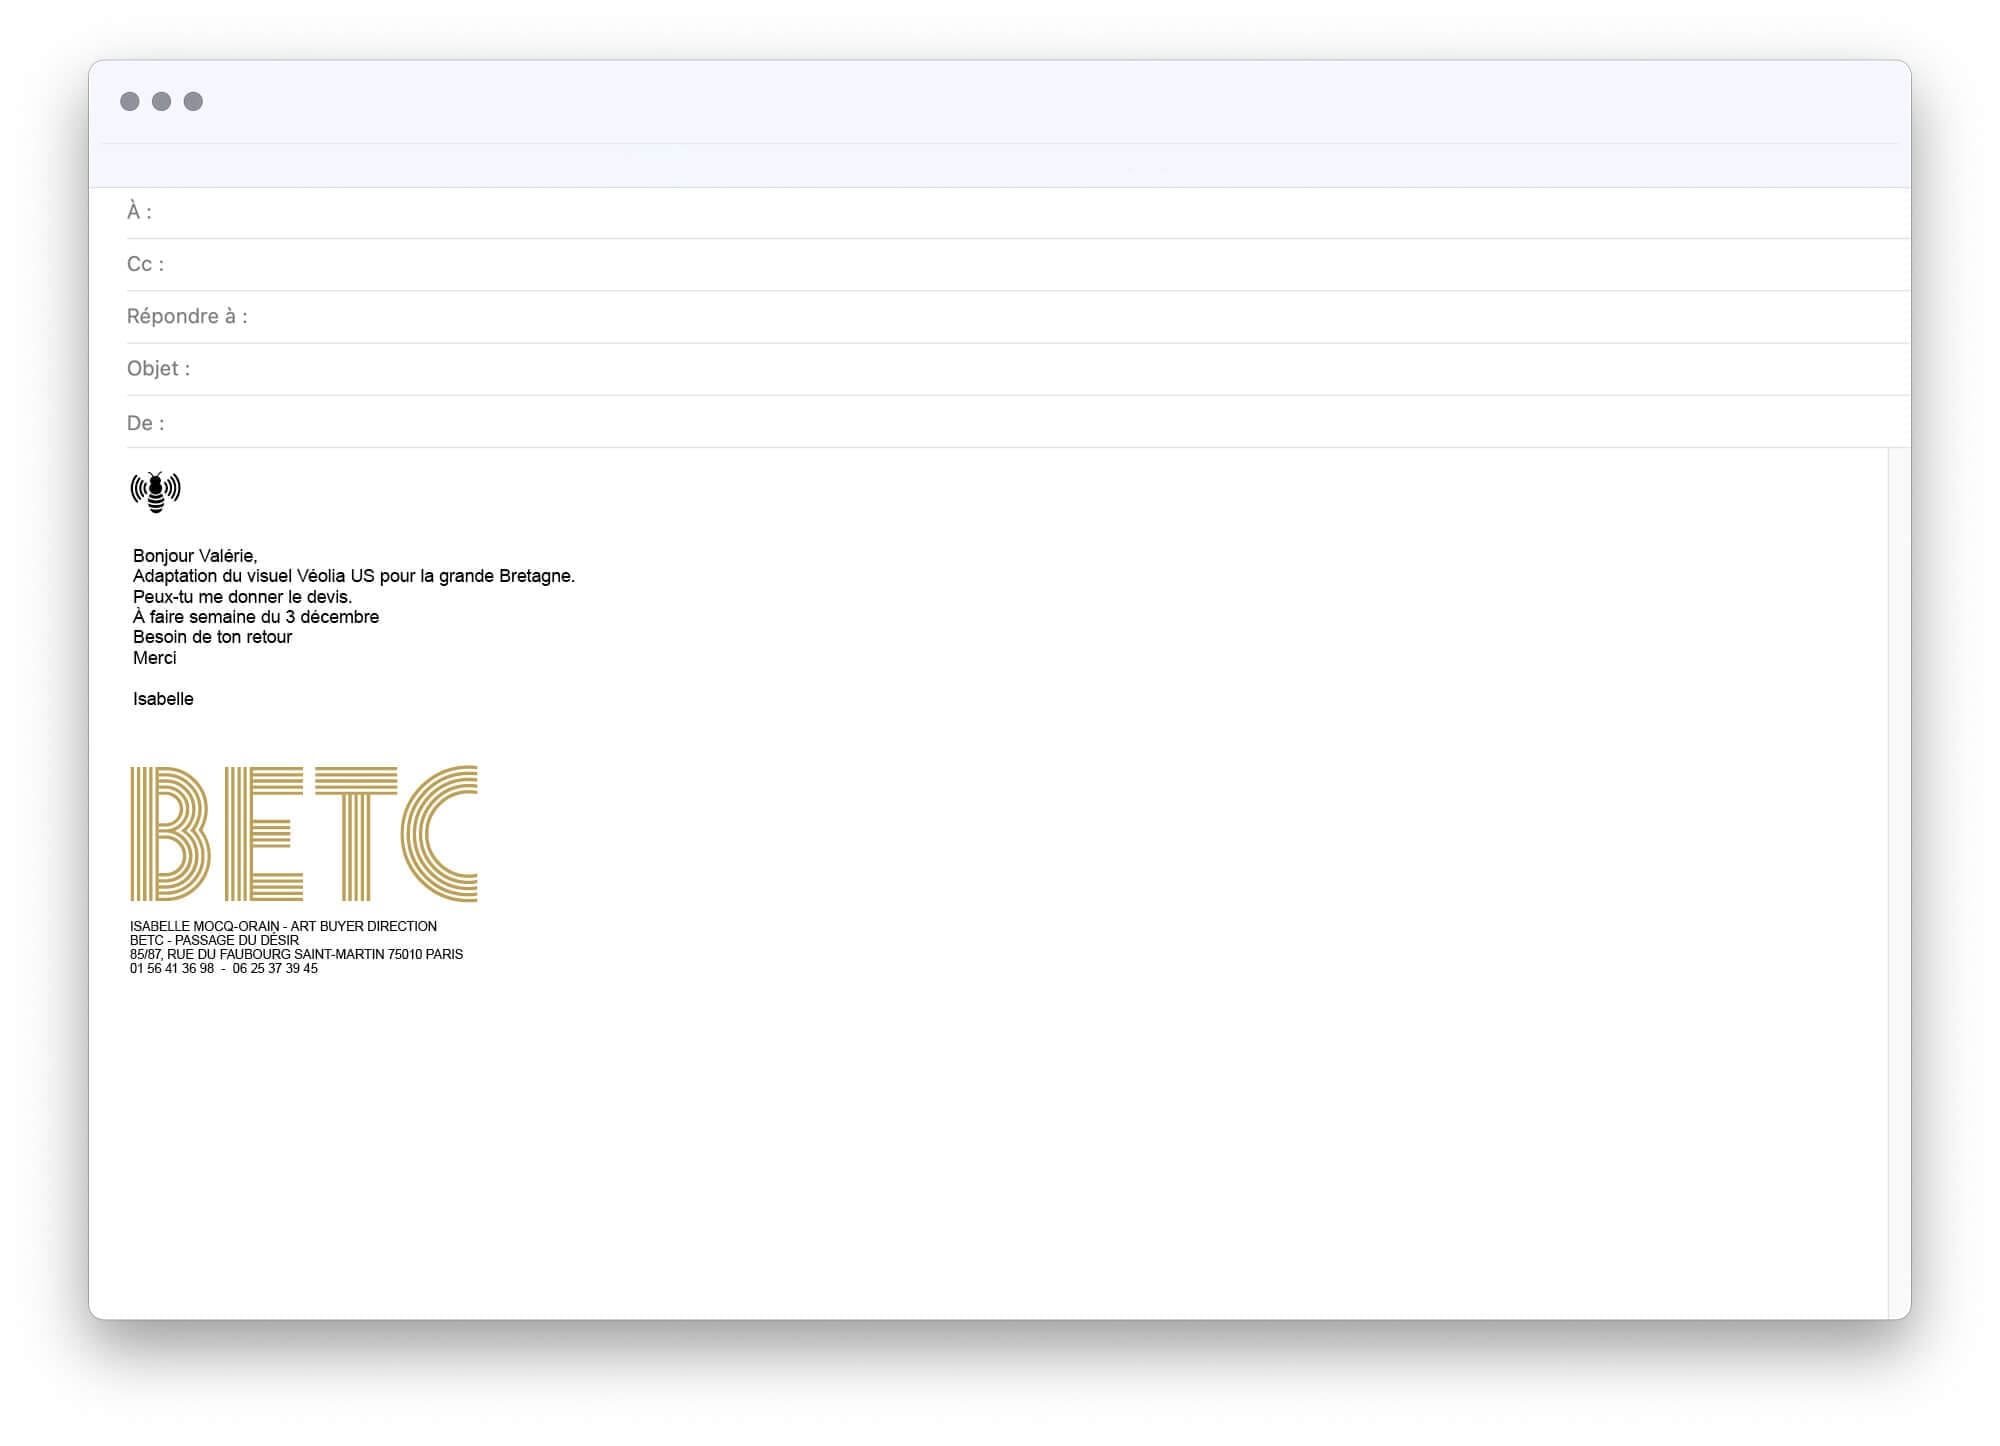 Le signature mail de l'agence de publicité BETC, design ichetkar